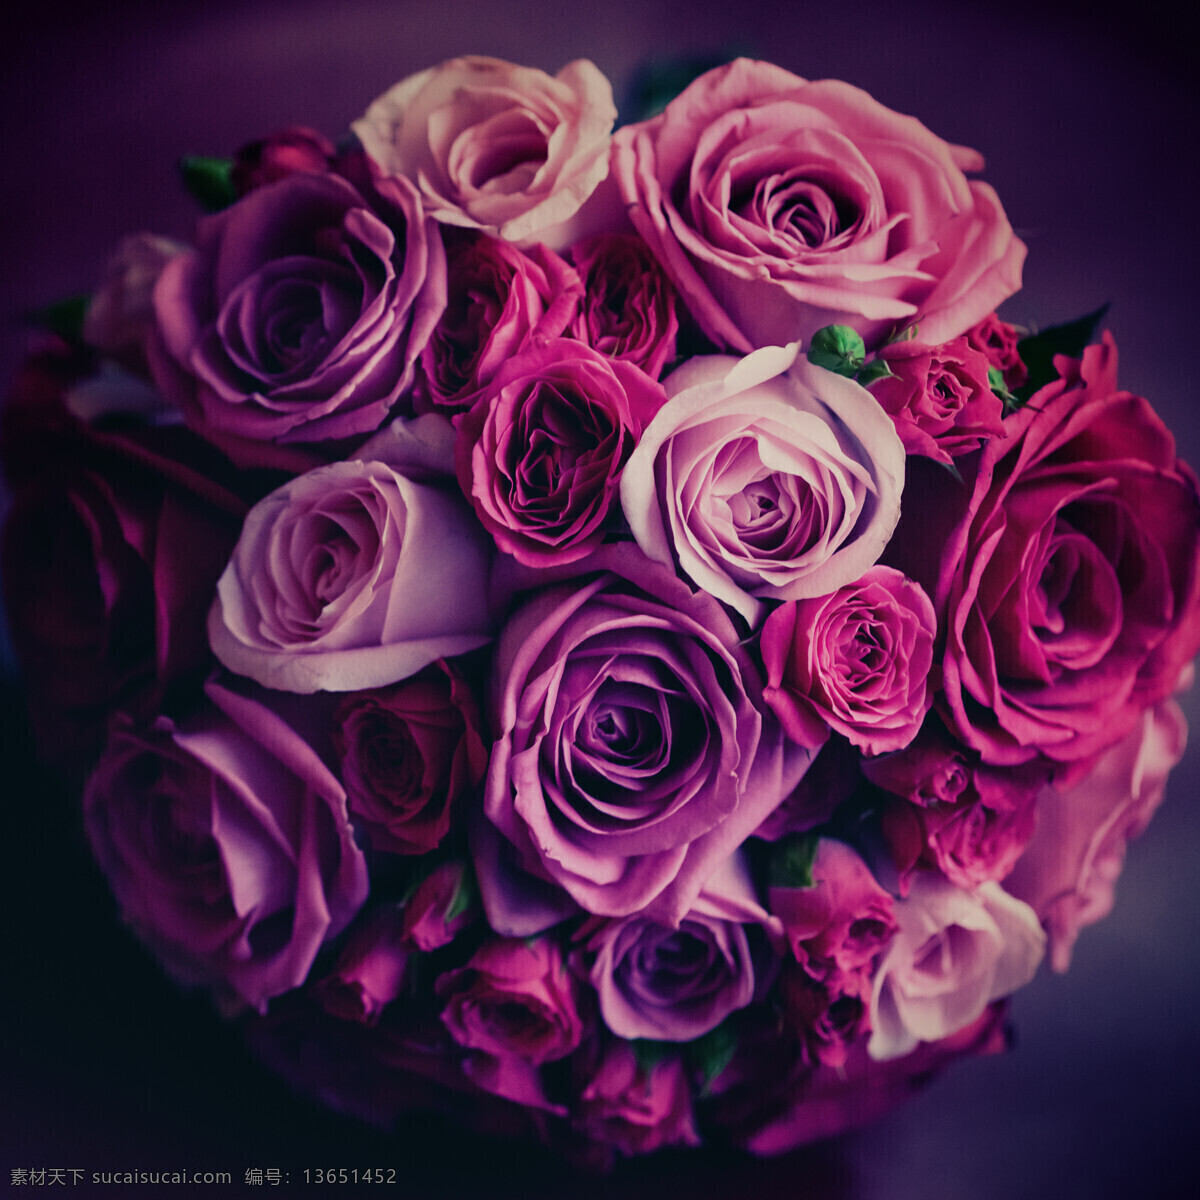 美丽 玫瑰花 花束 美丽鲜花 花卉 美丽花朵 婚礼花朵 节日庆典 生活百科